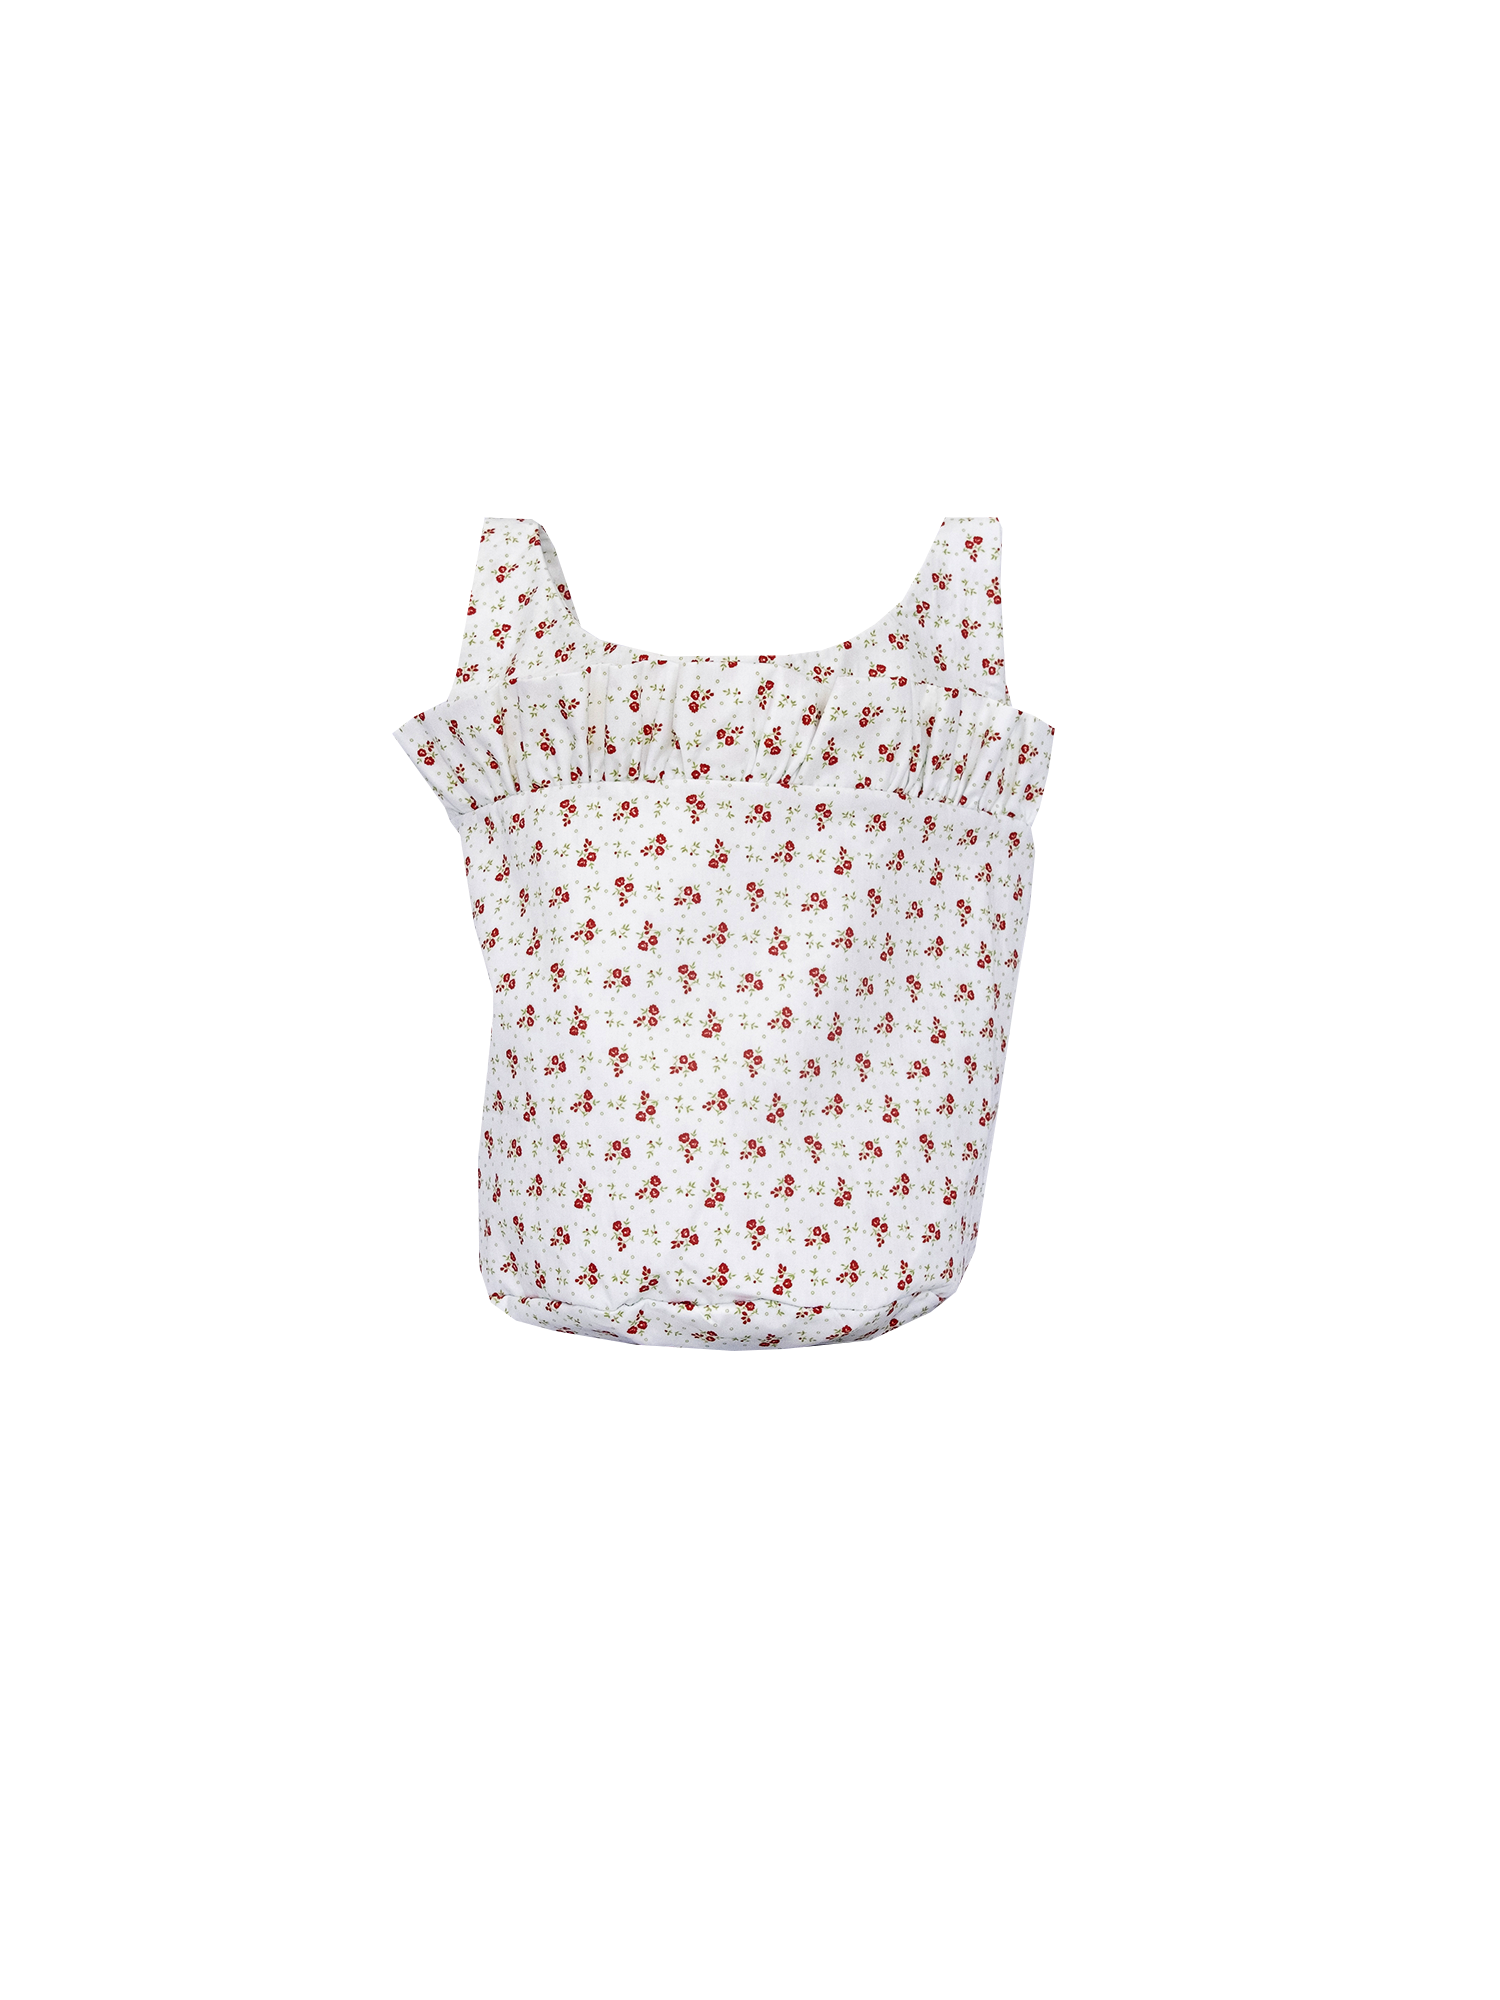 JASMINE - bucket bag with shoulder strap in cotton Sigurtà print